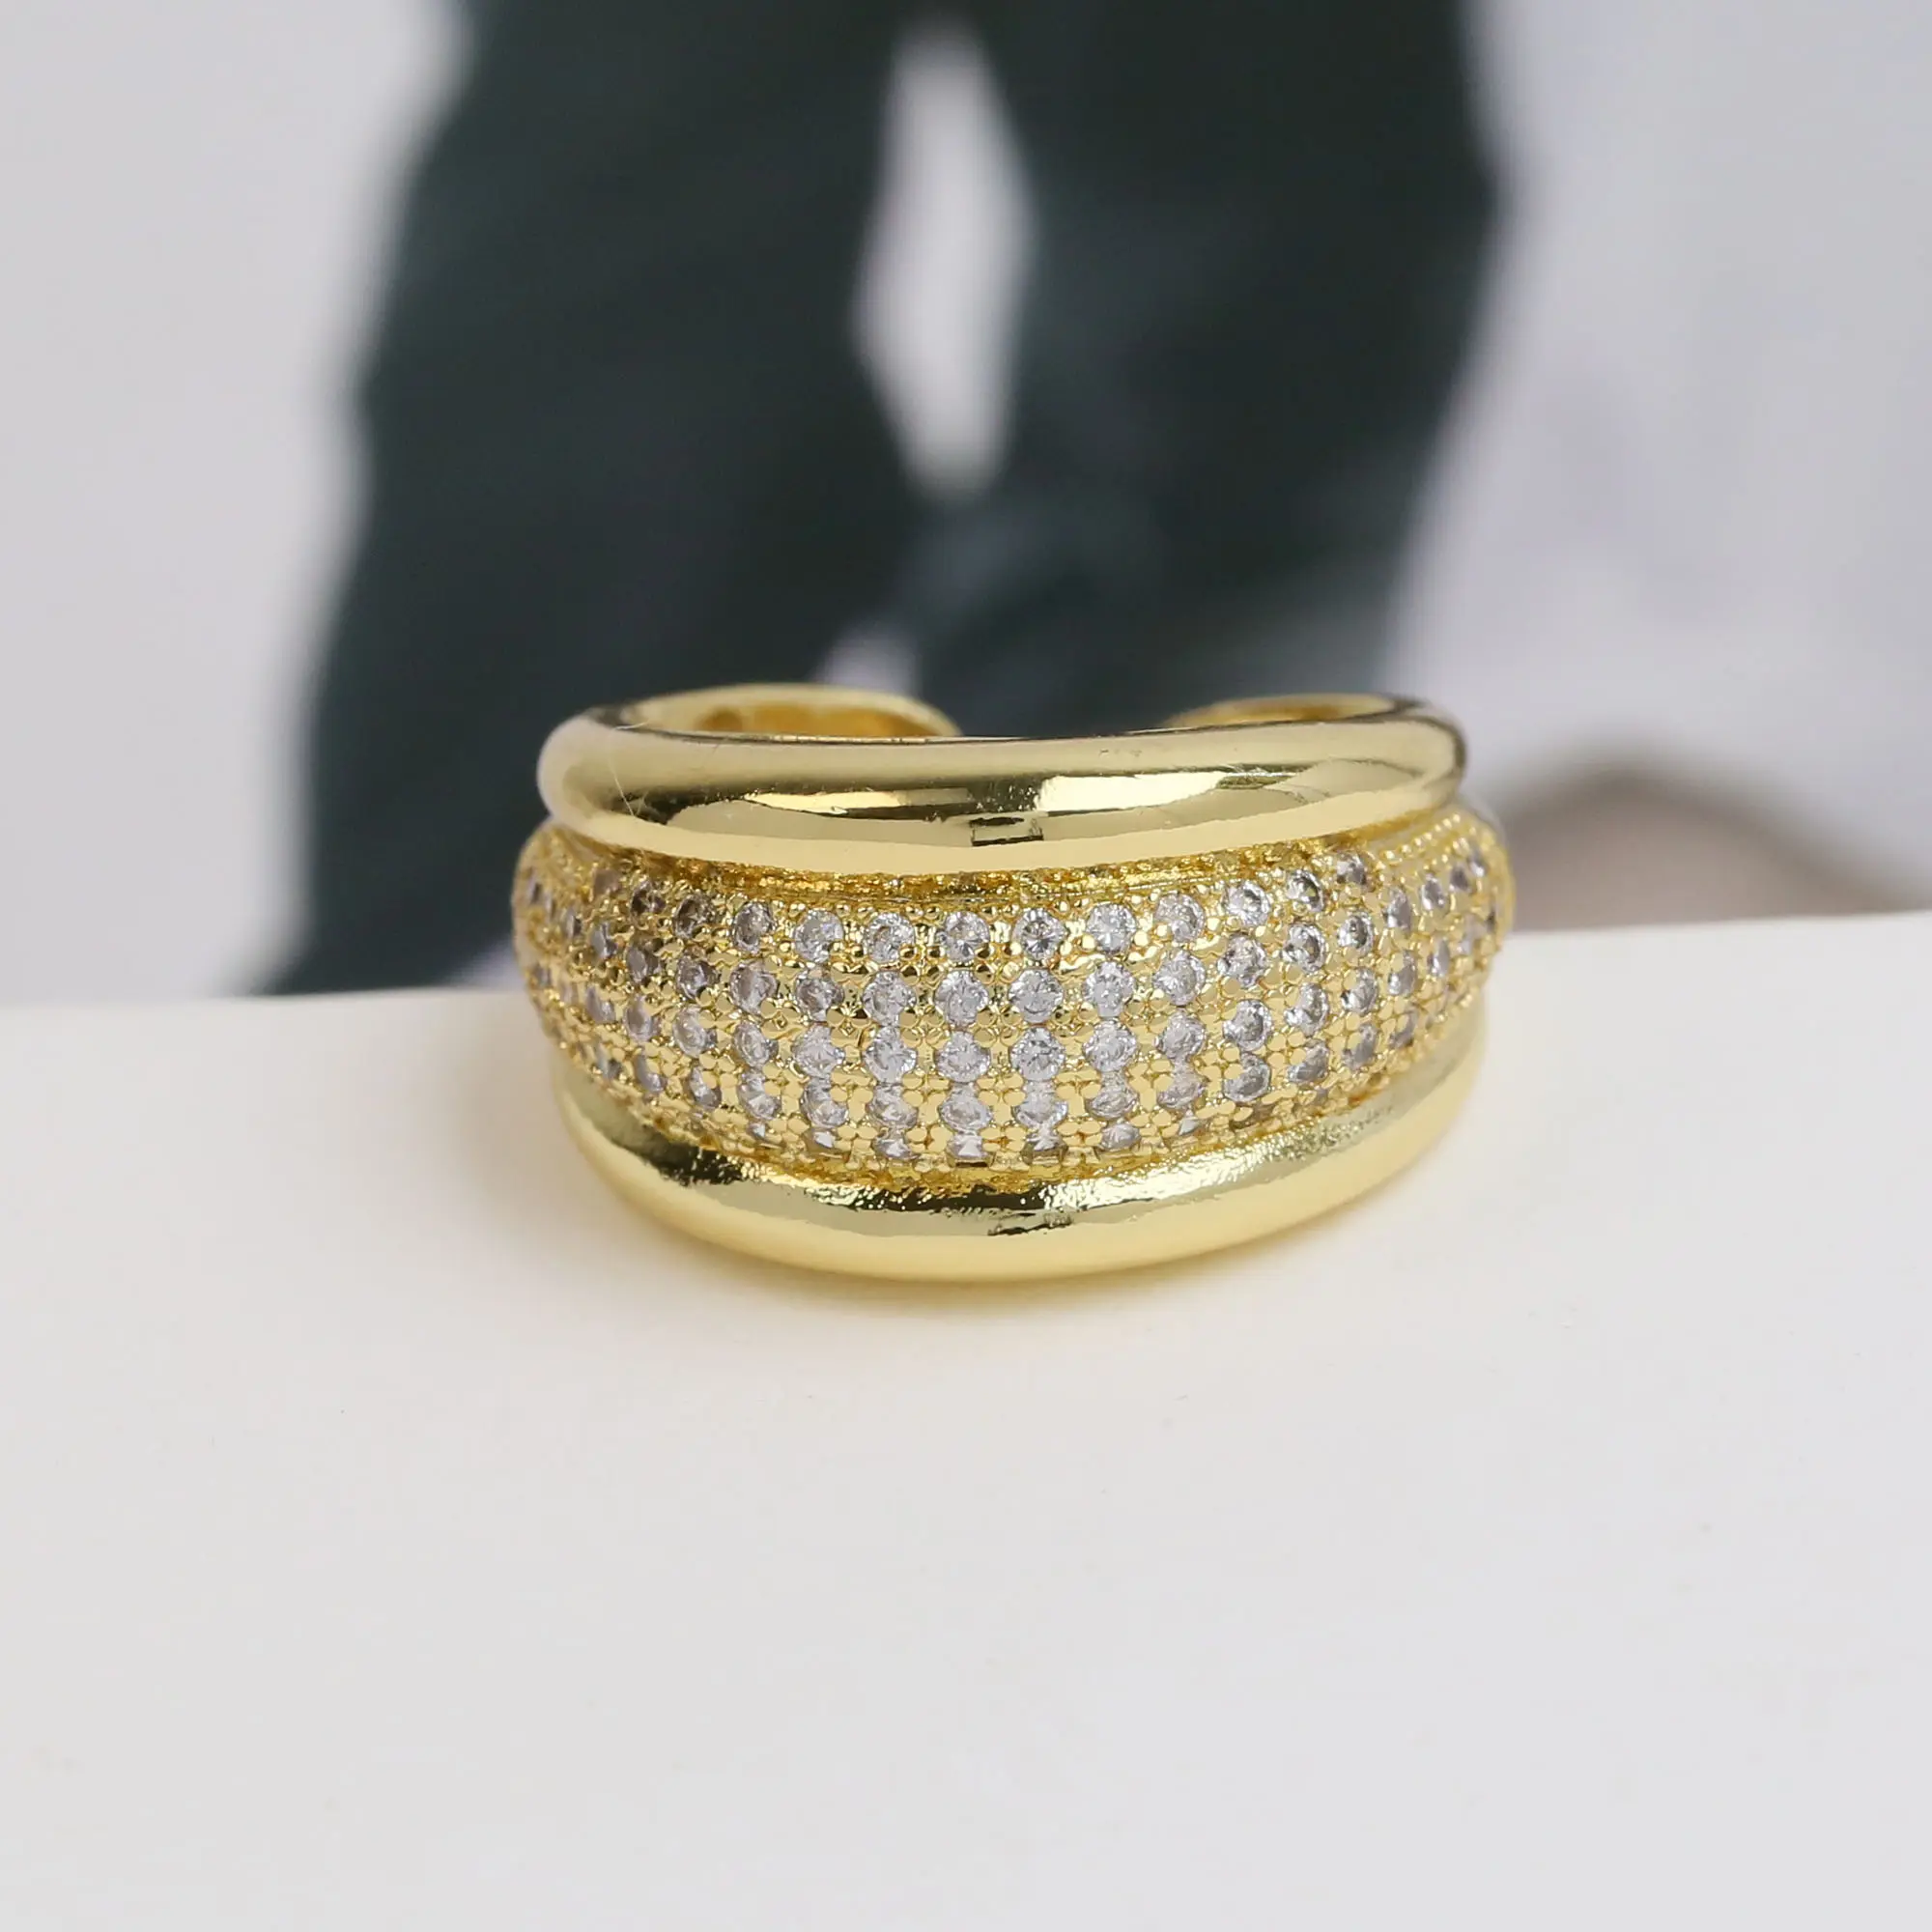 Đồ trang sức hợp thời trang bán buôn 24-Karat mạ vàng brass Zircon Pave 24 carat Nhẫn cưới vàng